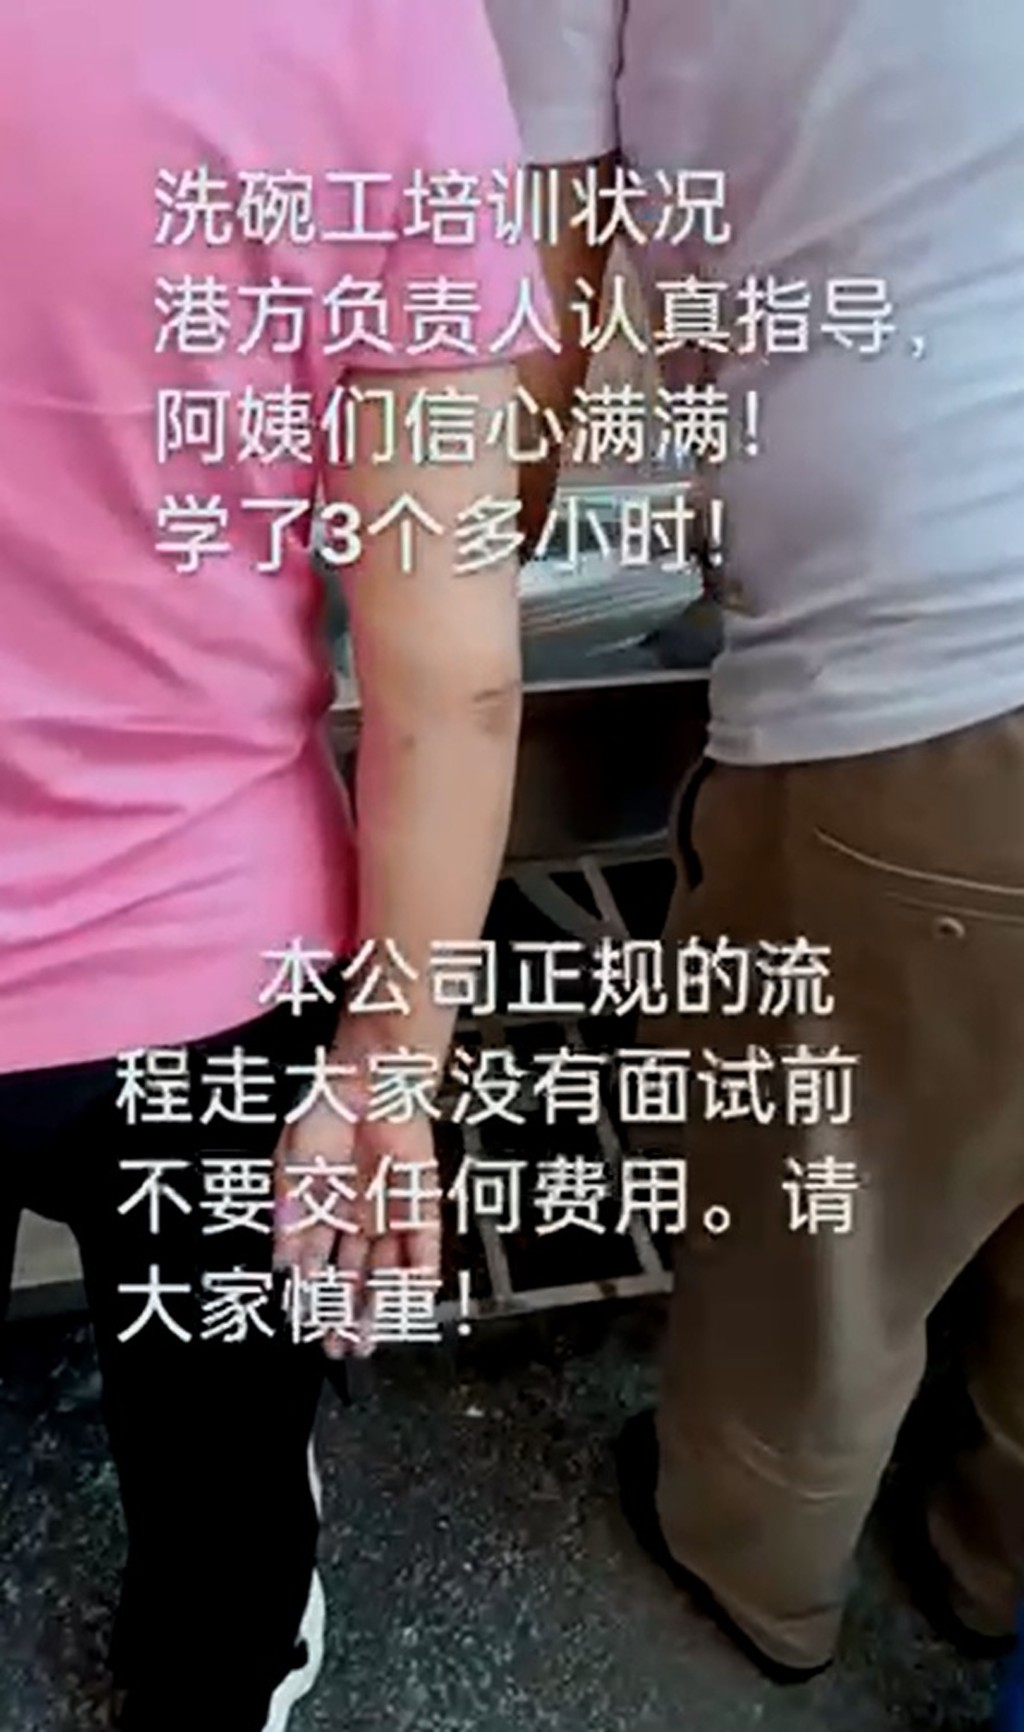 深圳中介公司發放短片，指會教導準備赴港工作的內地人如何在食店洗碗。